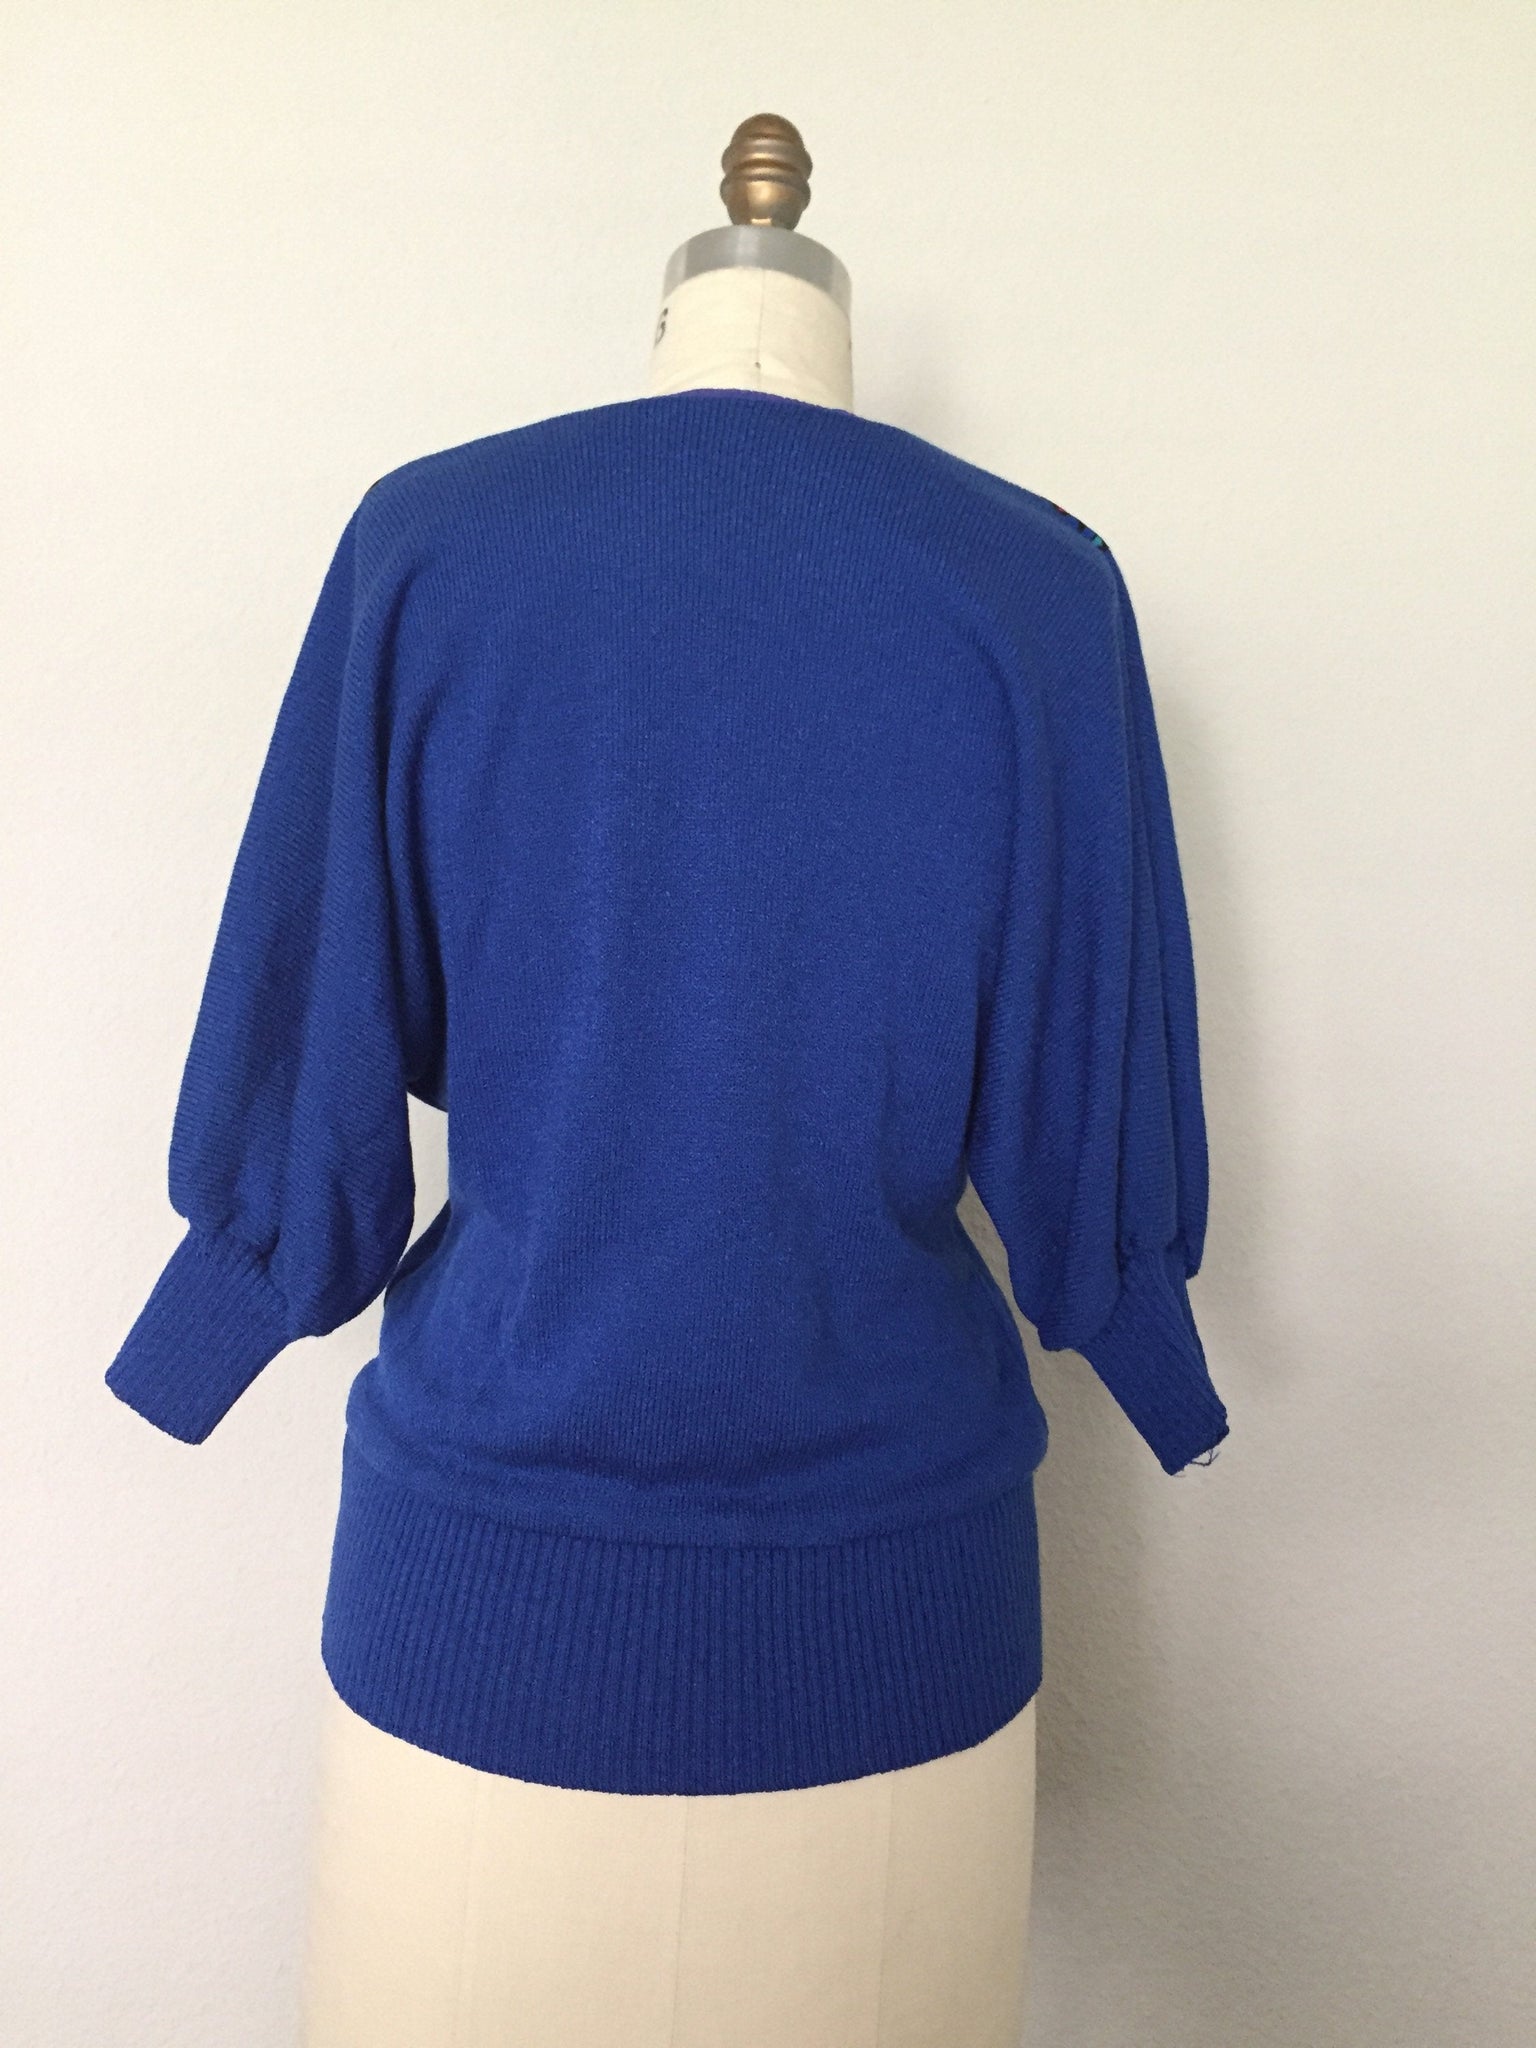 Vintage 80s/90s Blue V-Neck Sweater - ChicCityVintage